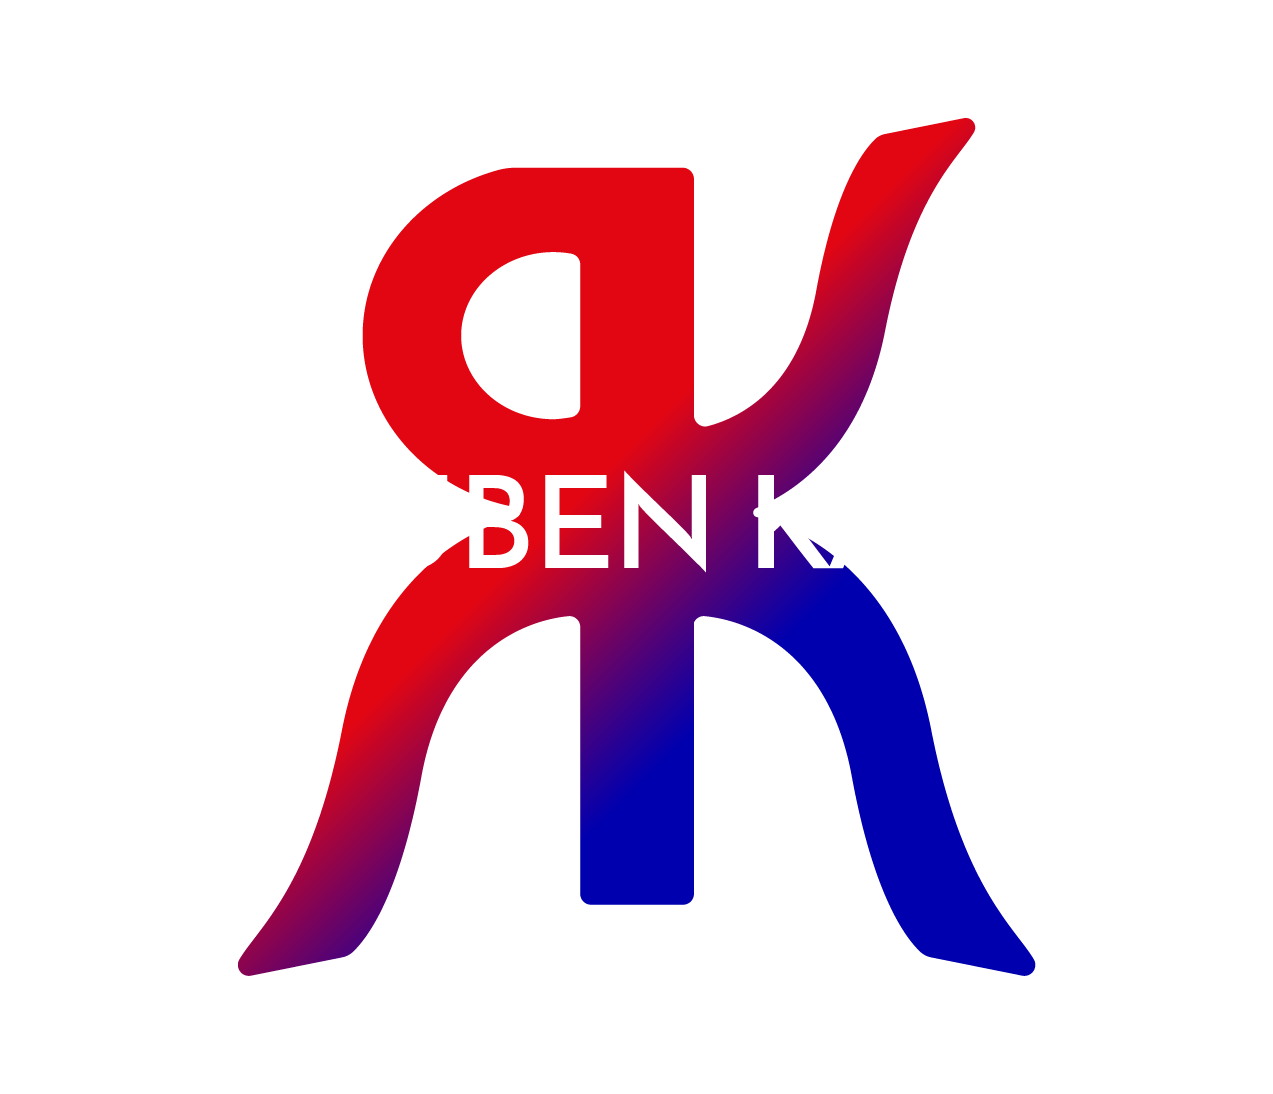 Reuben Kaye